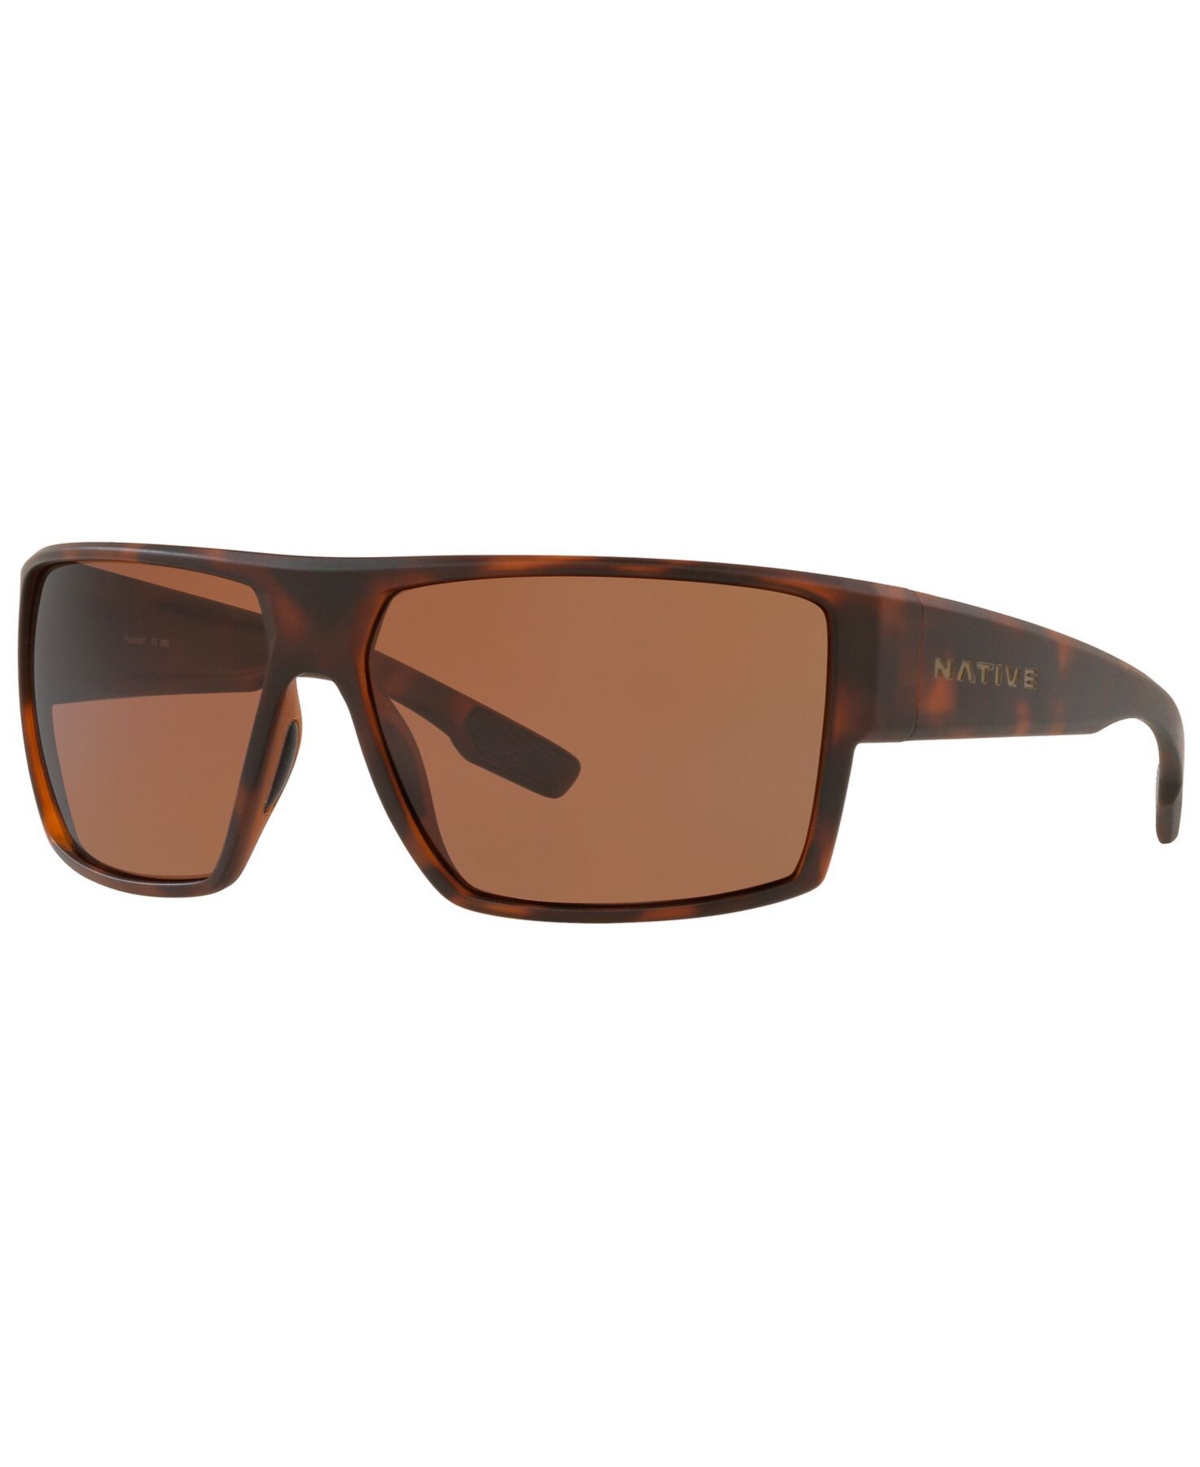 Native Men's Polarized Sunglasses, XD9013 - DESERT TORTOISE/BROWN